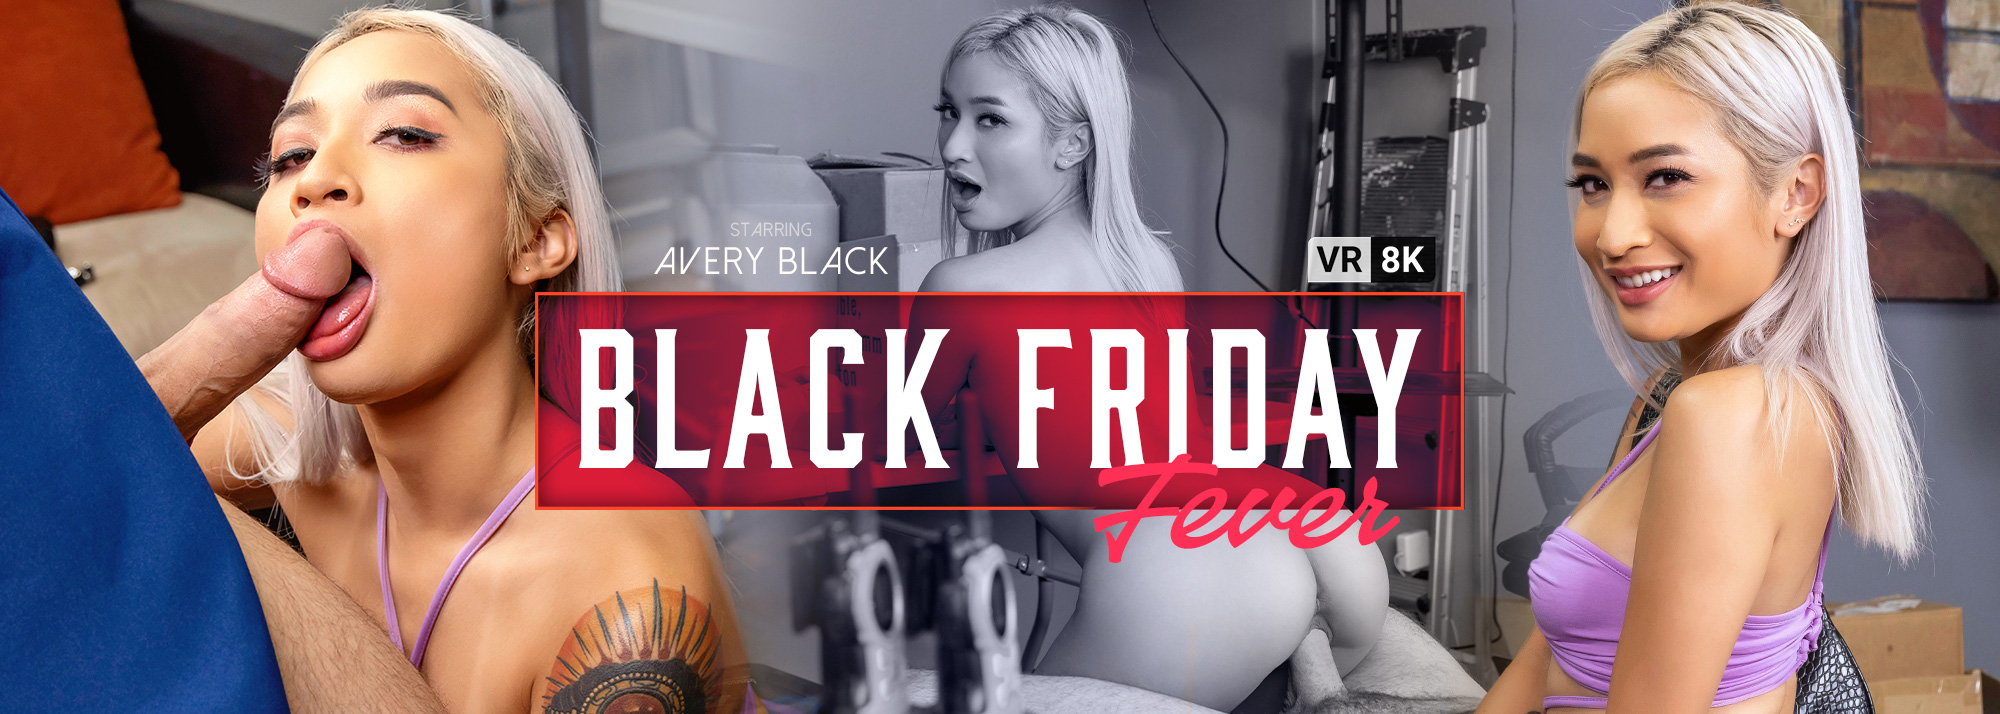 Black Friday Fever - VR Porn Video, Starring Avery Black VR